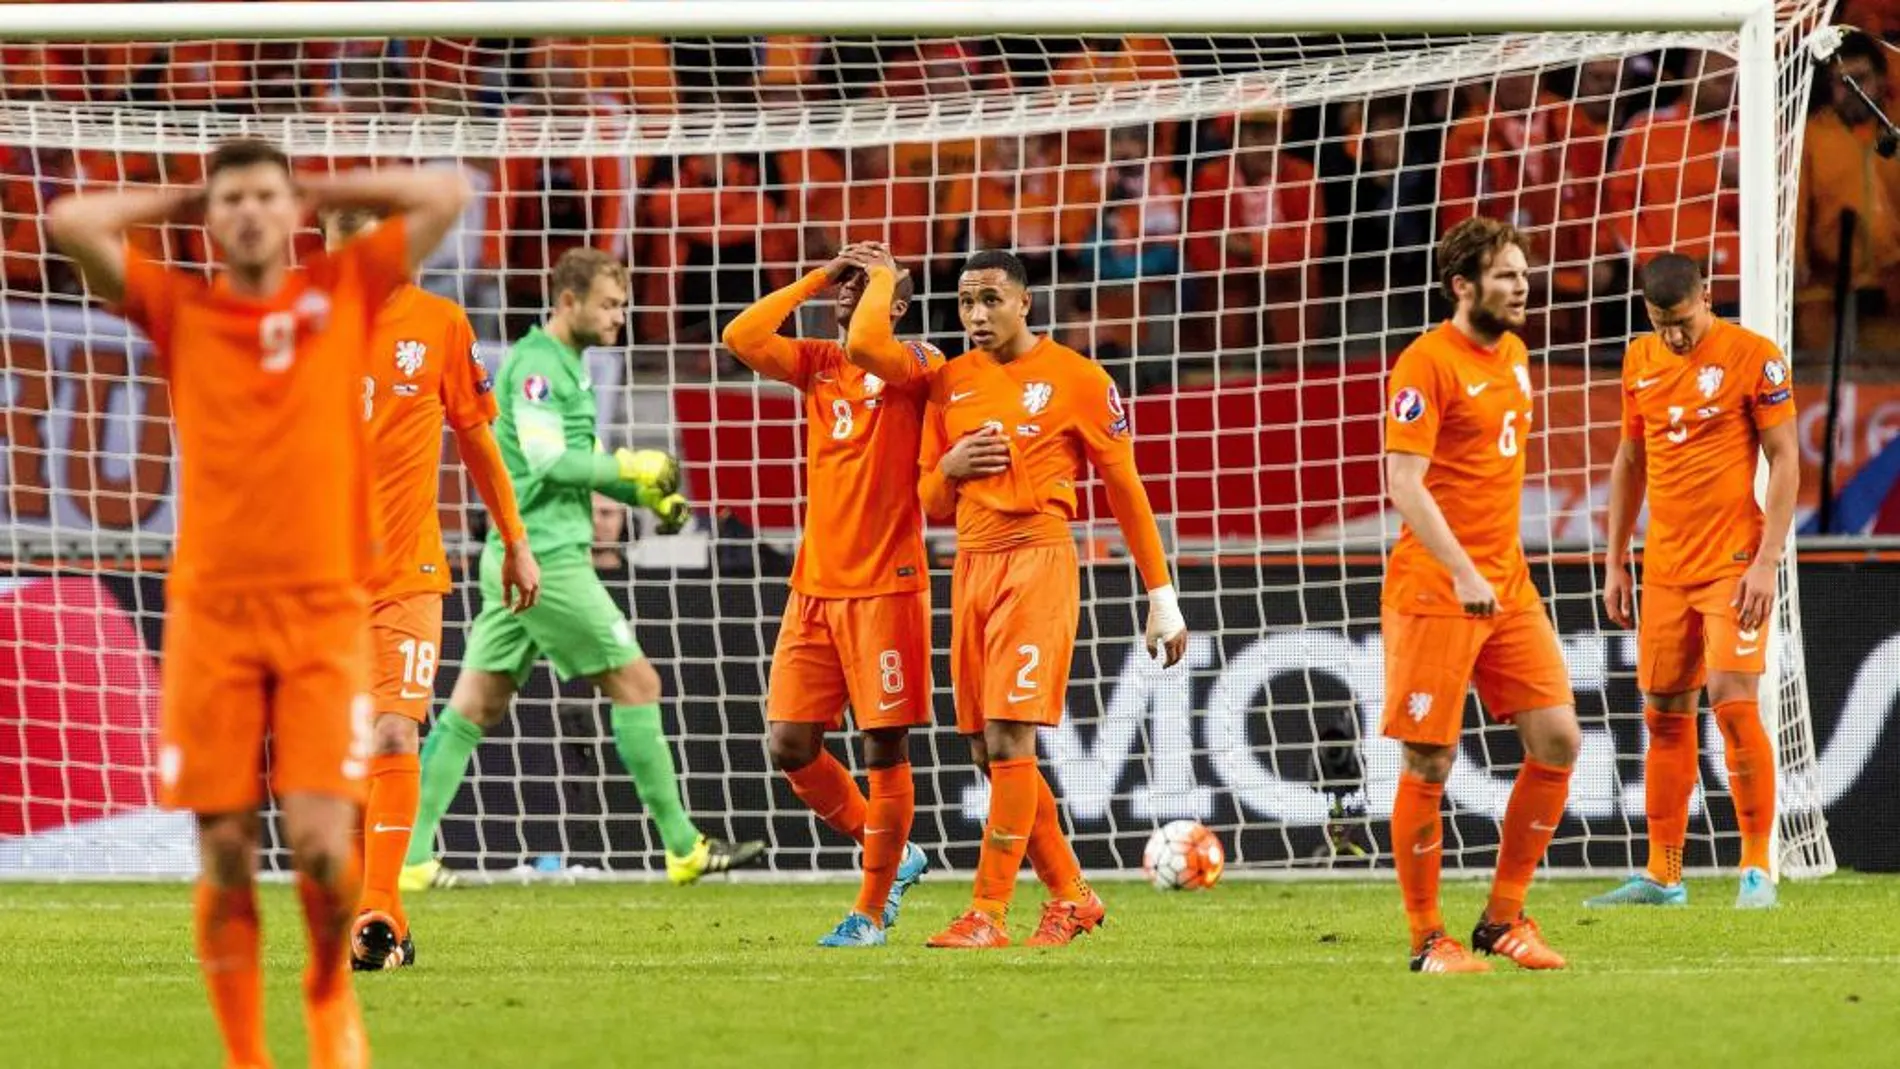 Jugadores del equipo holandés reaccionan hoy, martes 13 de octubre de 2015, durante el partido entre Holanda y República Checa clasificatorio a la Eurocopa 2016 en Amsterdam, Holanda.